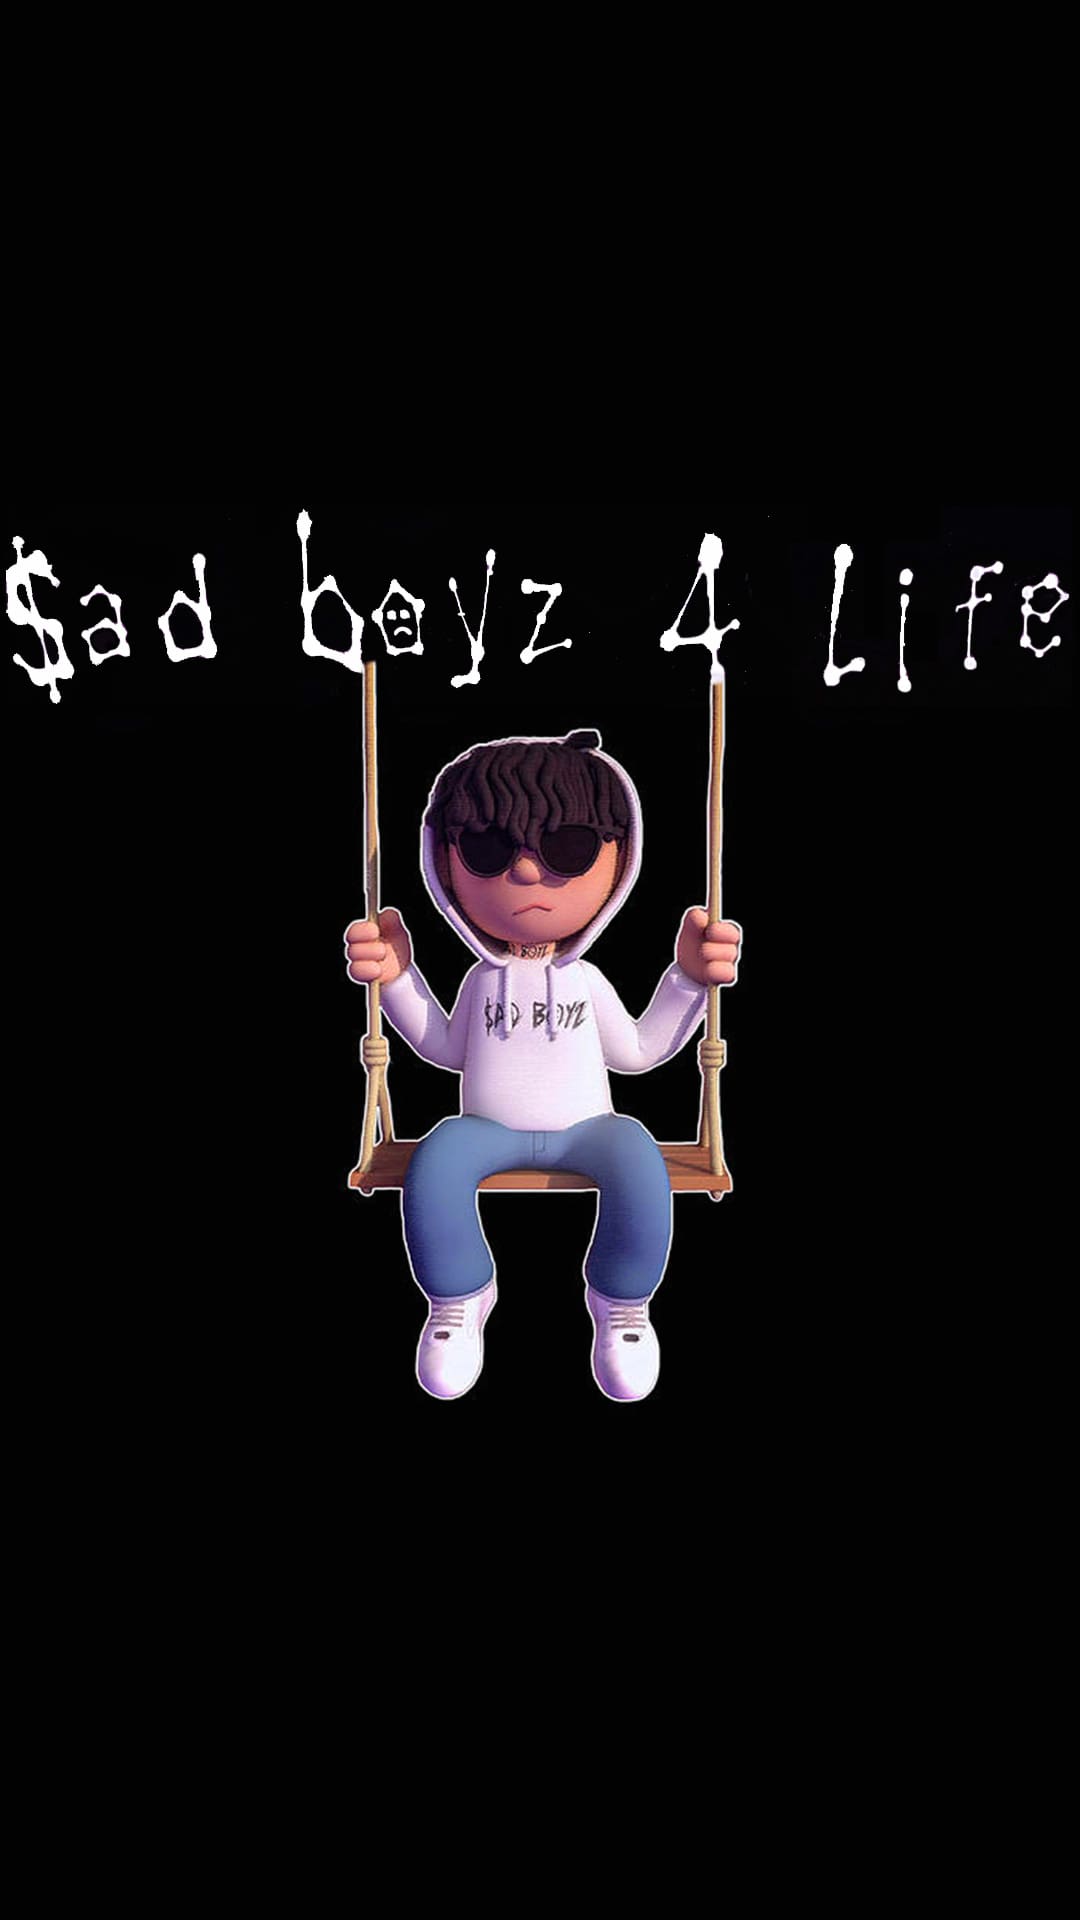 Sad Boyz 4 Life 2 Wallpapers